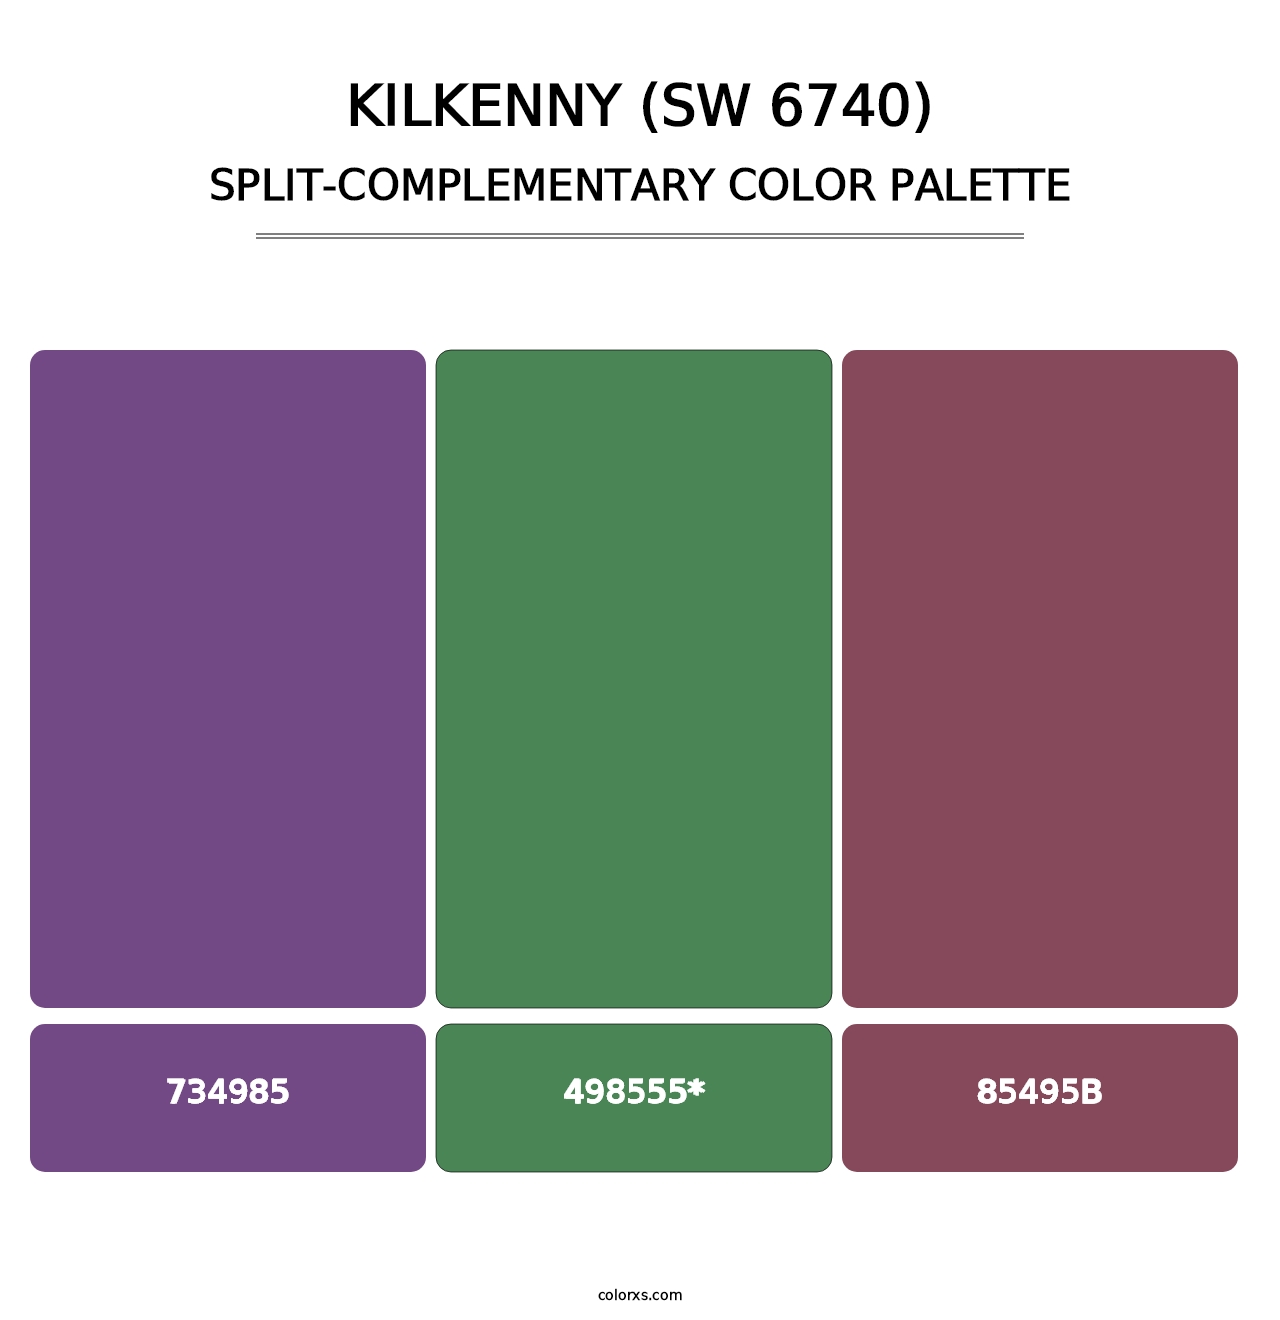 Kilkenny (SW 6740) - Split-Complementary Color Palette